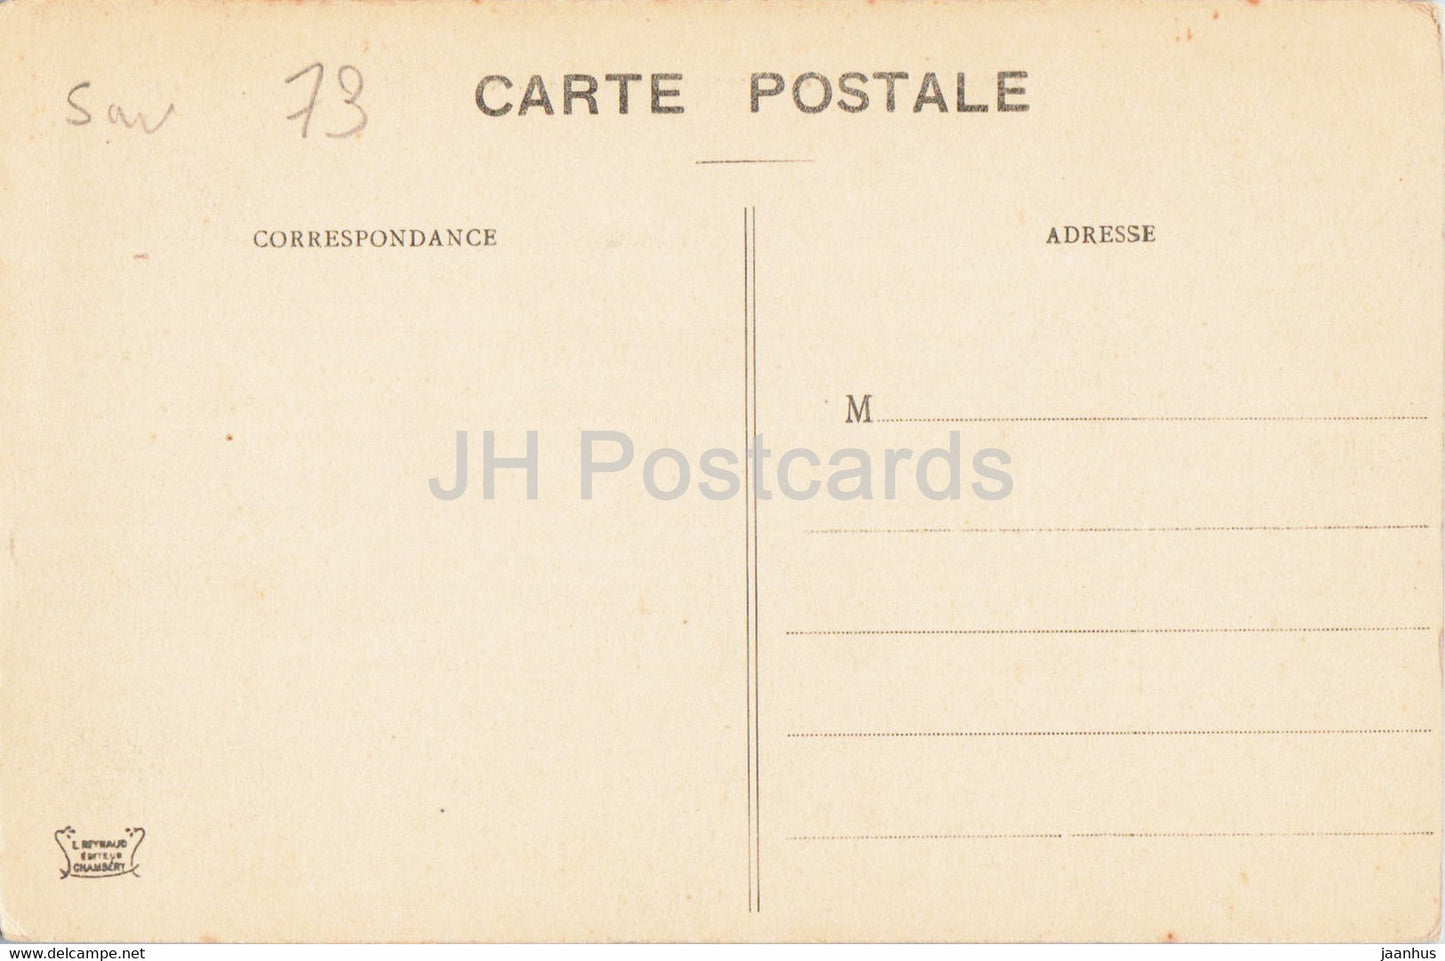 Lac du Bourget - Promontoire de Chatillon - 972 - old postcard - France - unused